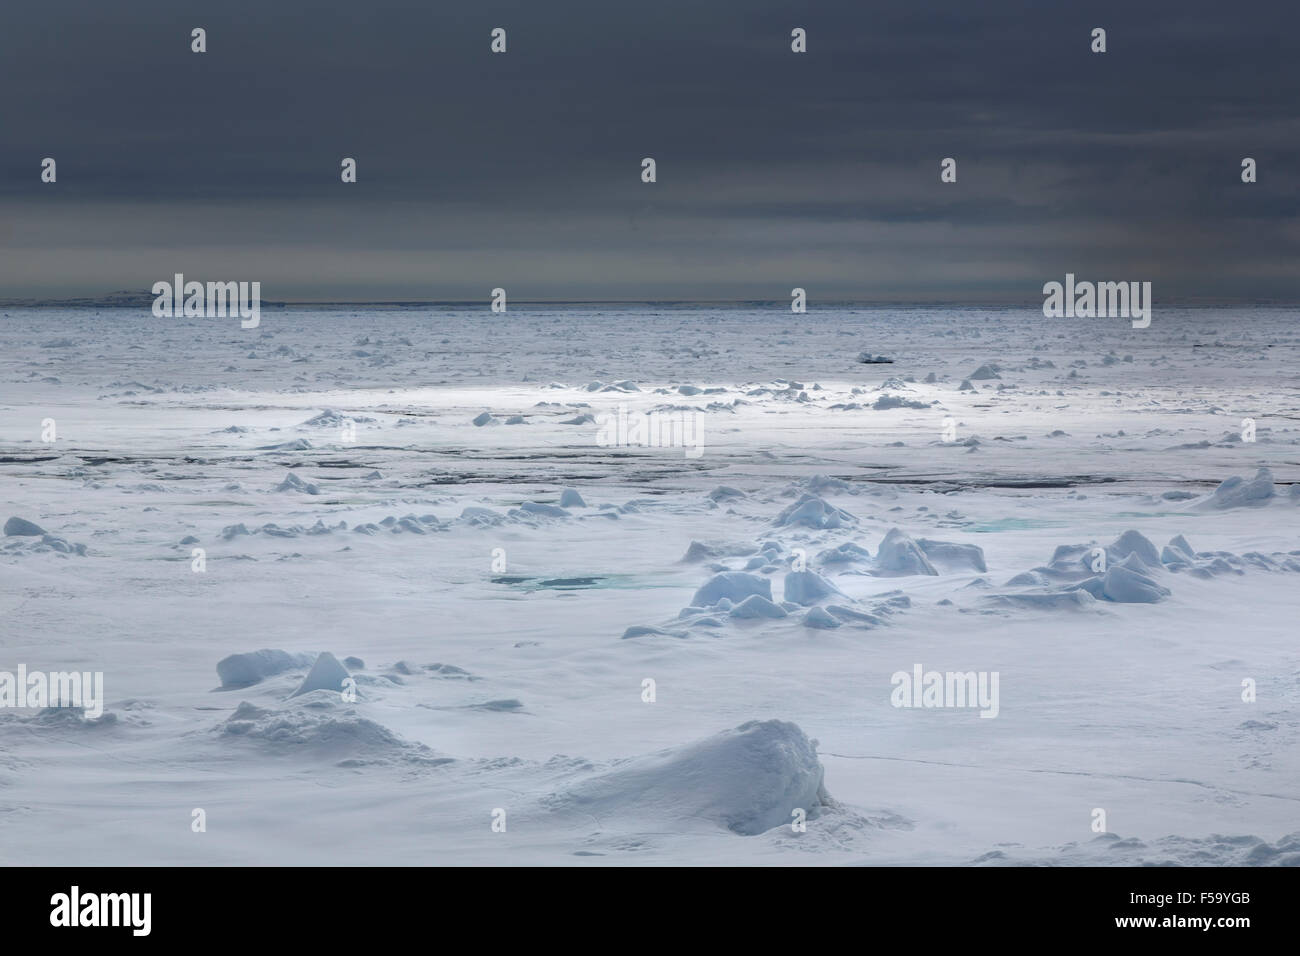 Bordo del pack-ghiaccio, Oceano Artico, isola Spitsbergen, arcipelago delle Svalbard Isole Svalbard e Jan Mayen, Norvegia, Europa Foto Stock